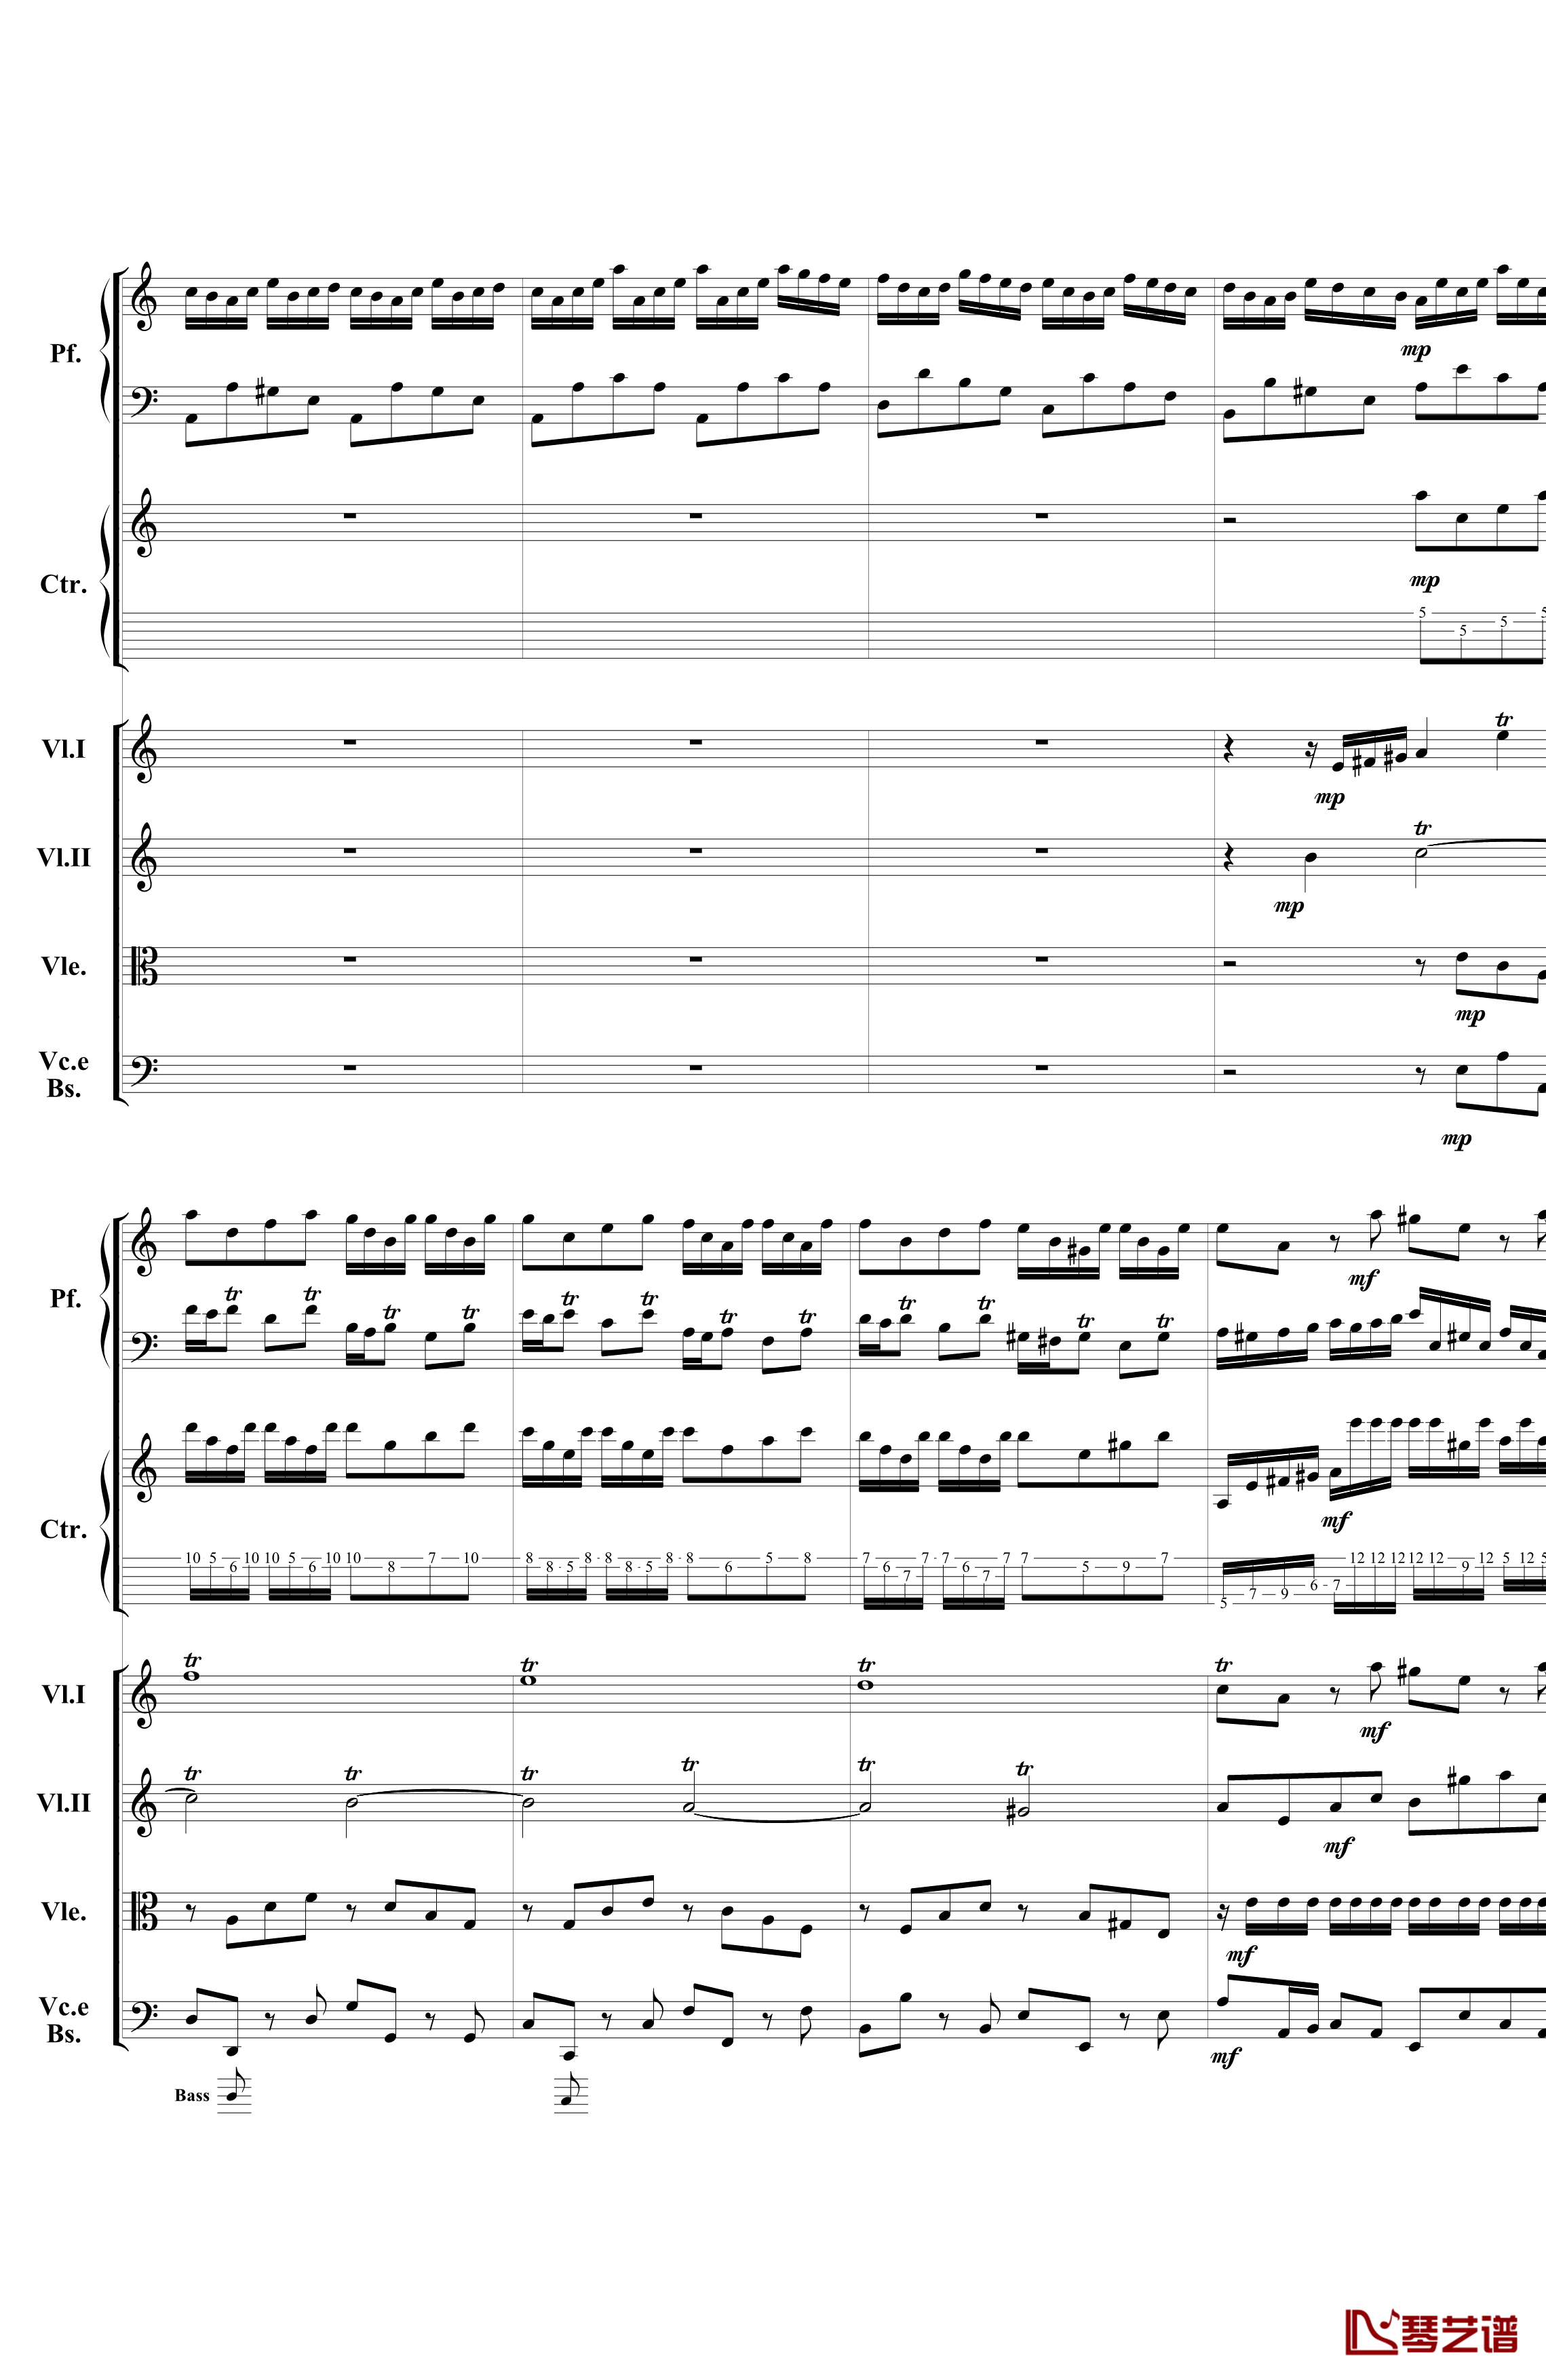 巴赫为四架钢琴写的钢琴协奏曲钢琴谱-钢琴吉他弦乐组-巴哈-Bach, Johann Sebastian3